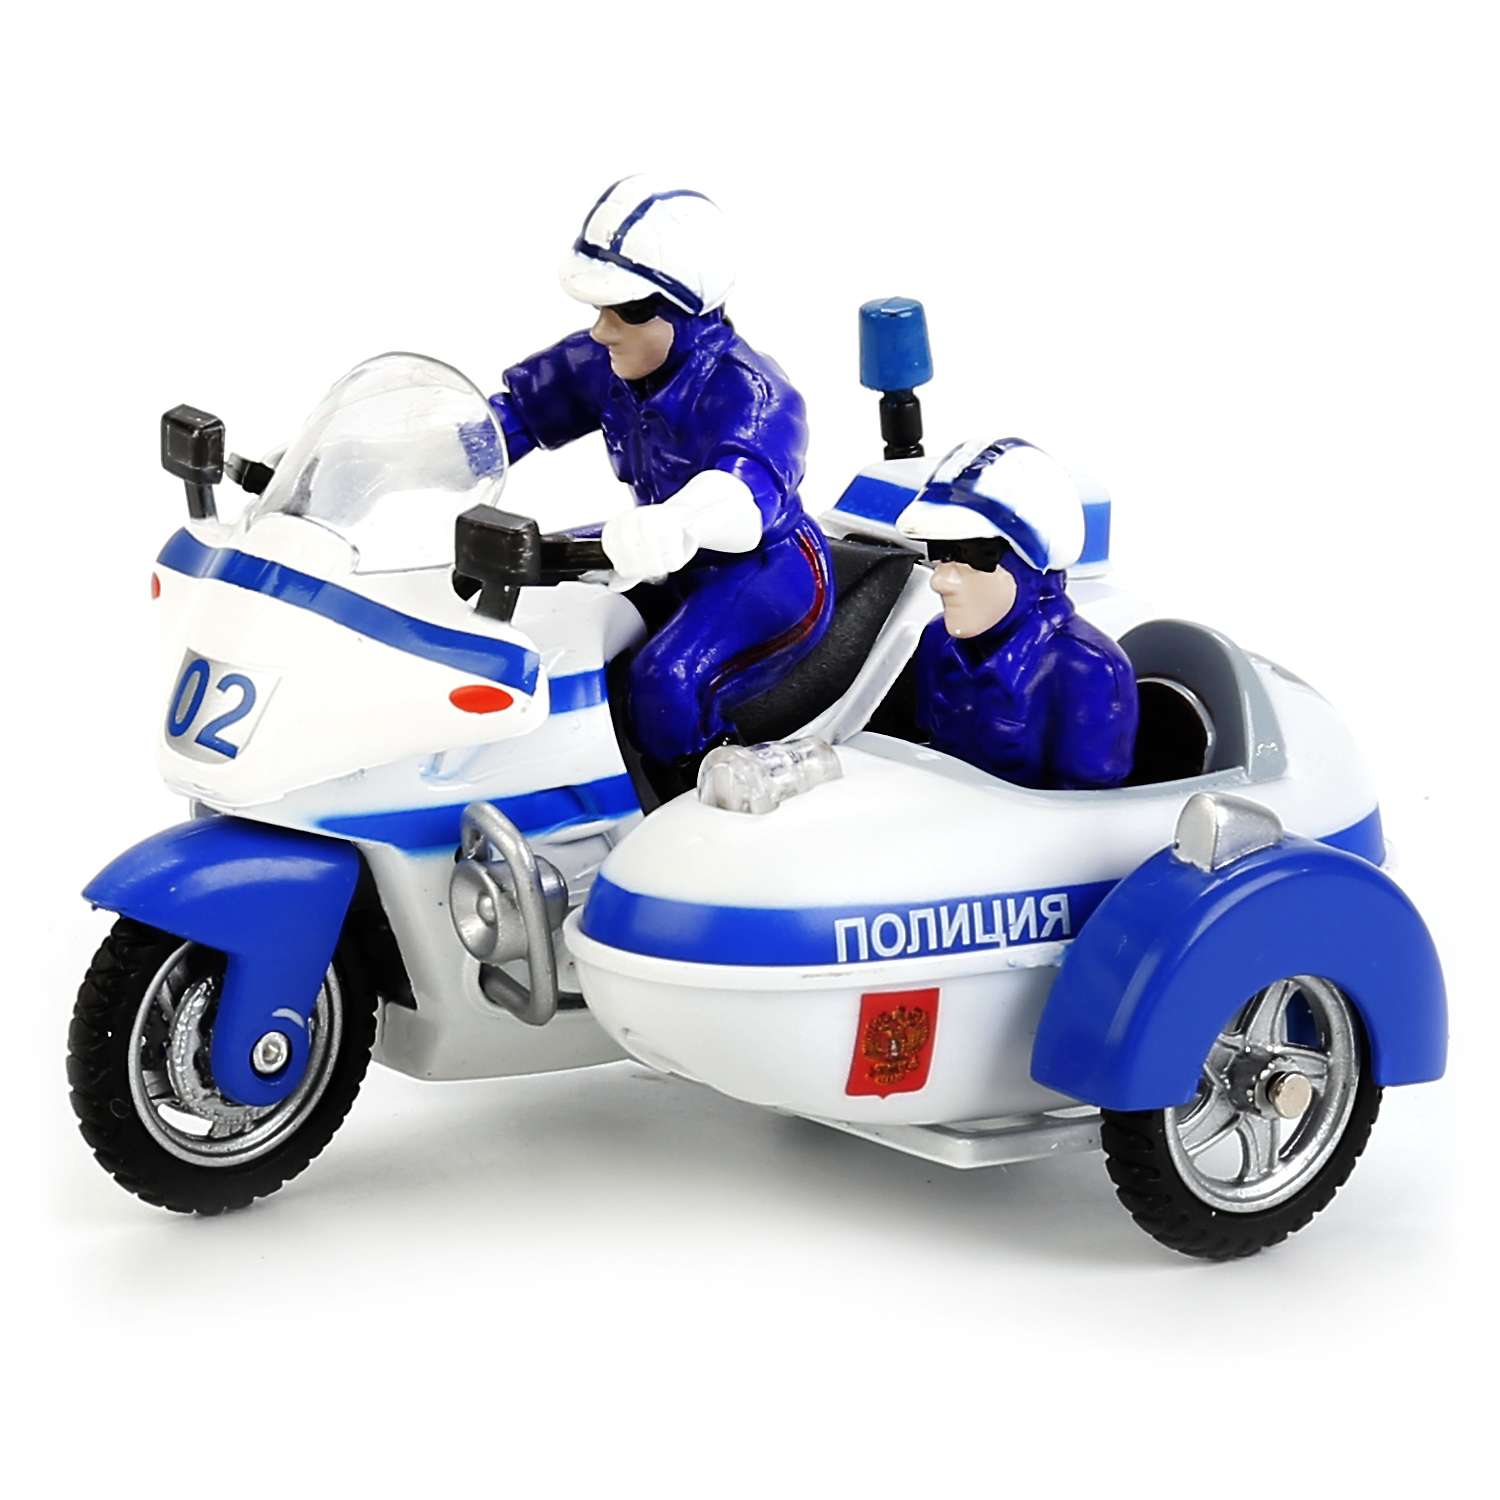 Мотоцикл Технопарк полиция 144876/CT-124-2 144876/CT-1247-2 - фото 1